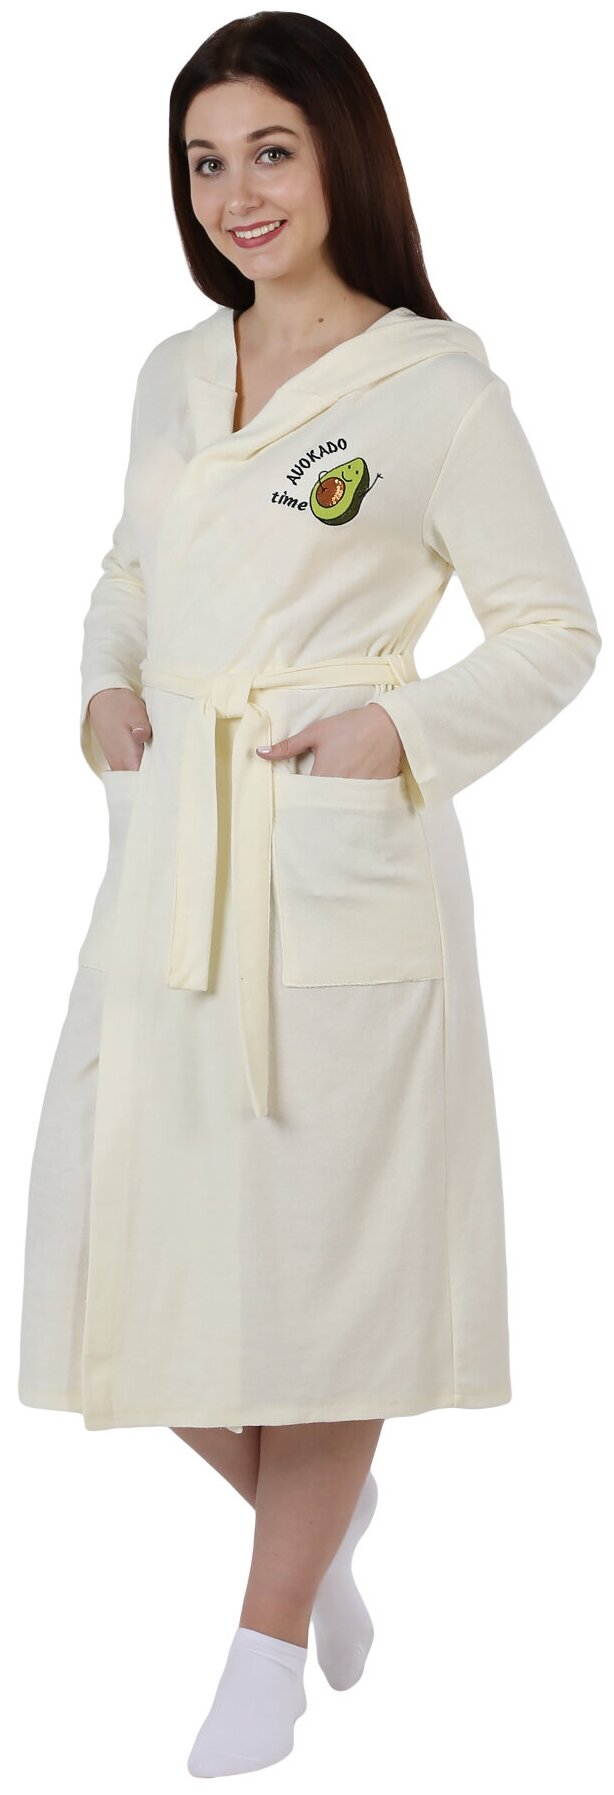 Женский халат Авокадо Кремовый размер 54 Махра на трикотажной основе Оптима трикотаж запашной с поясом с капюшоном рукав длинный карманы